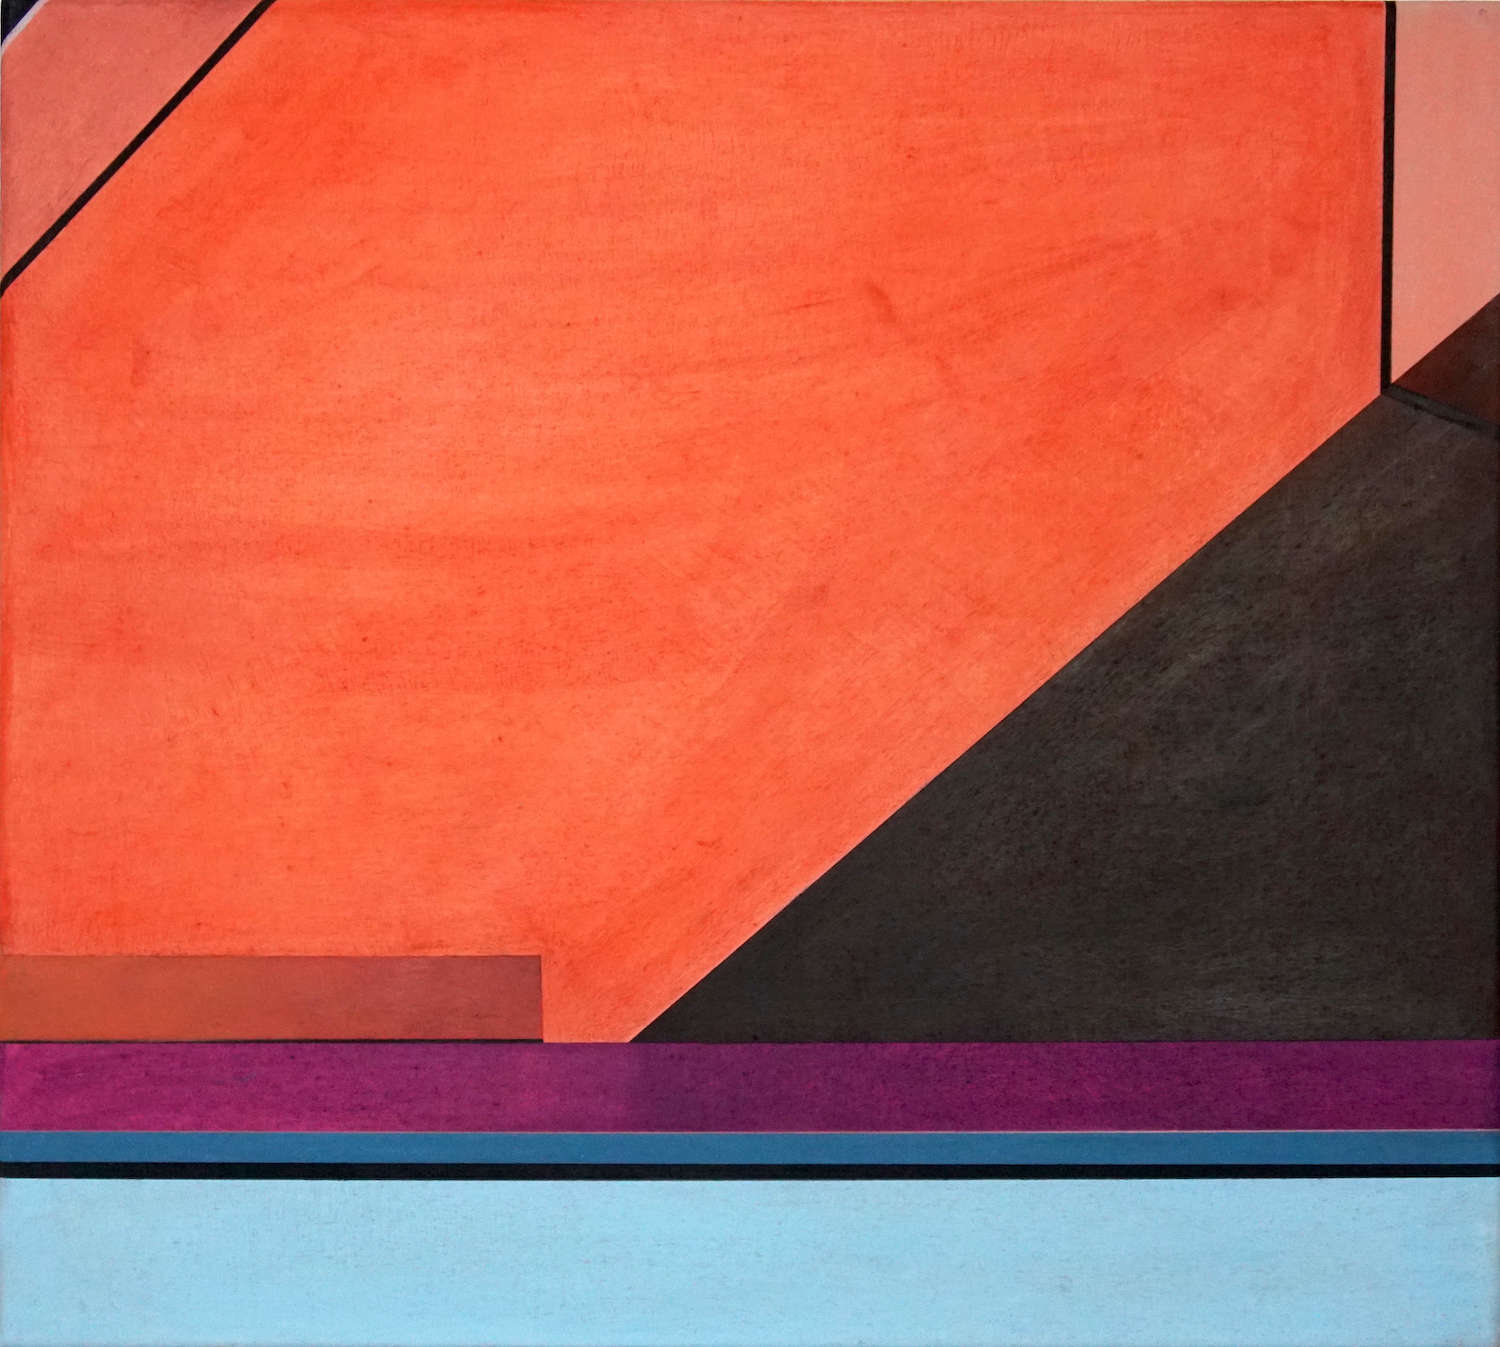 Tegel 7, 2020, 45 x 50 cm, Öl/Lw, Oil on Canvas